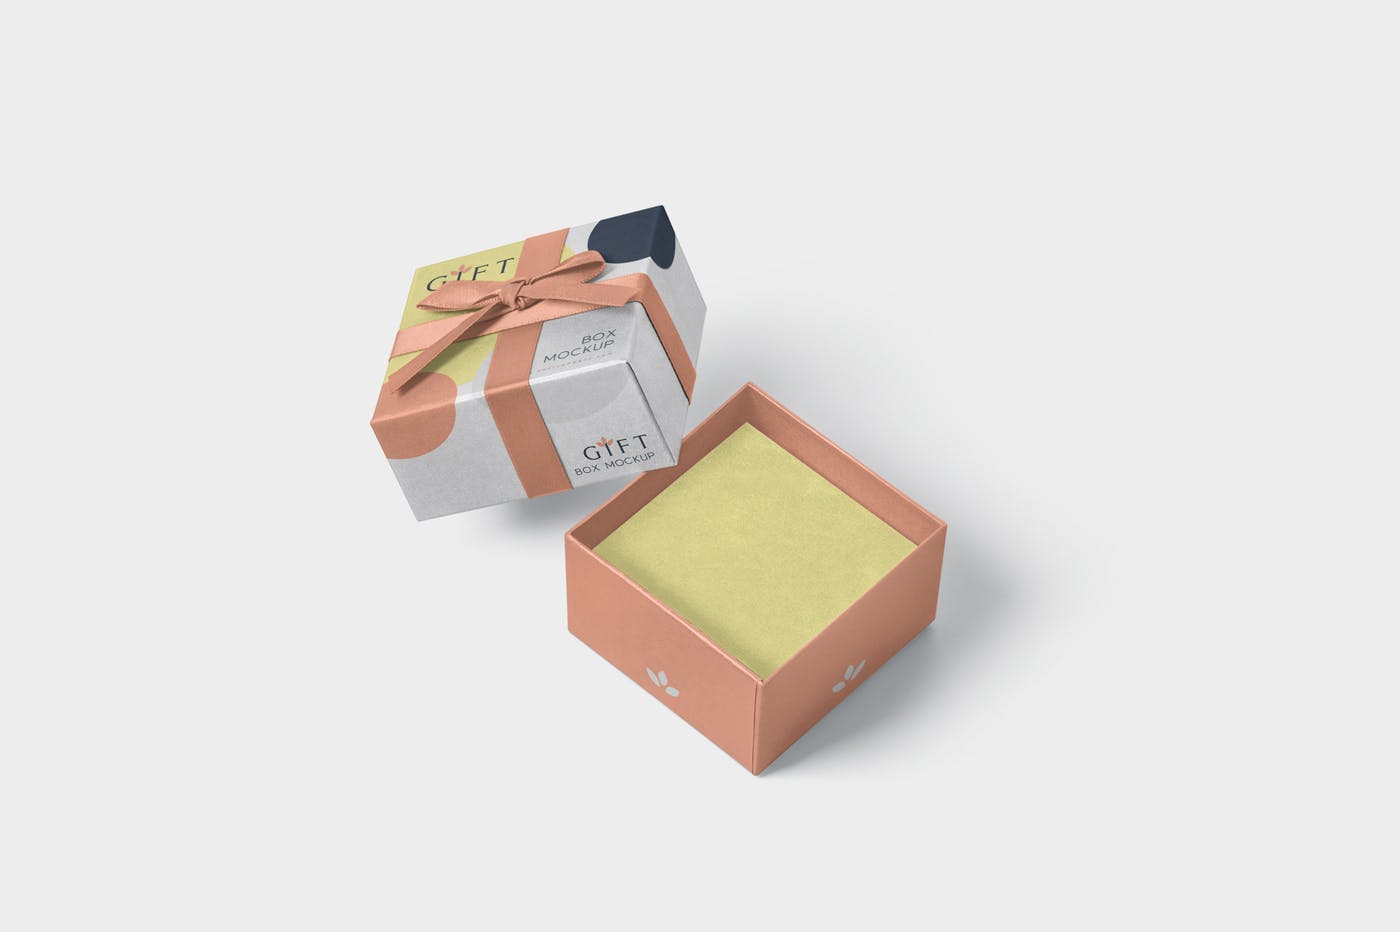 高档礼品包装盒外观设计样机模板 Gift Box Mockups插图(2)